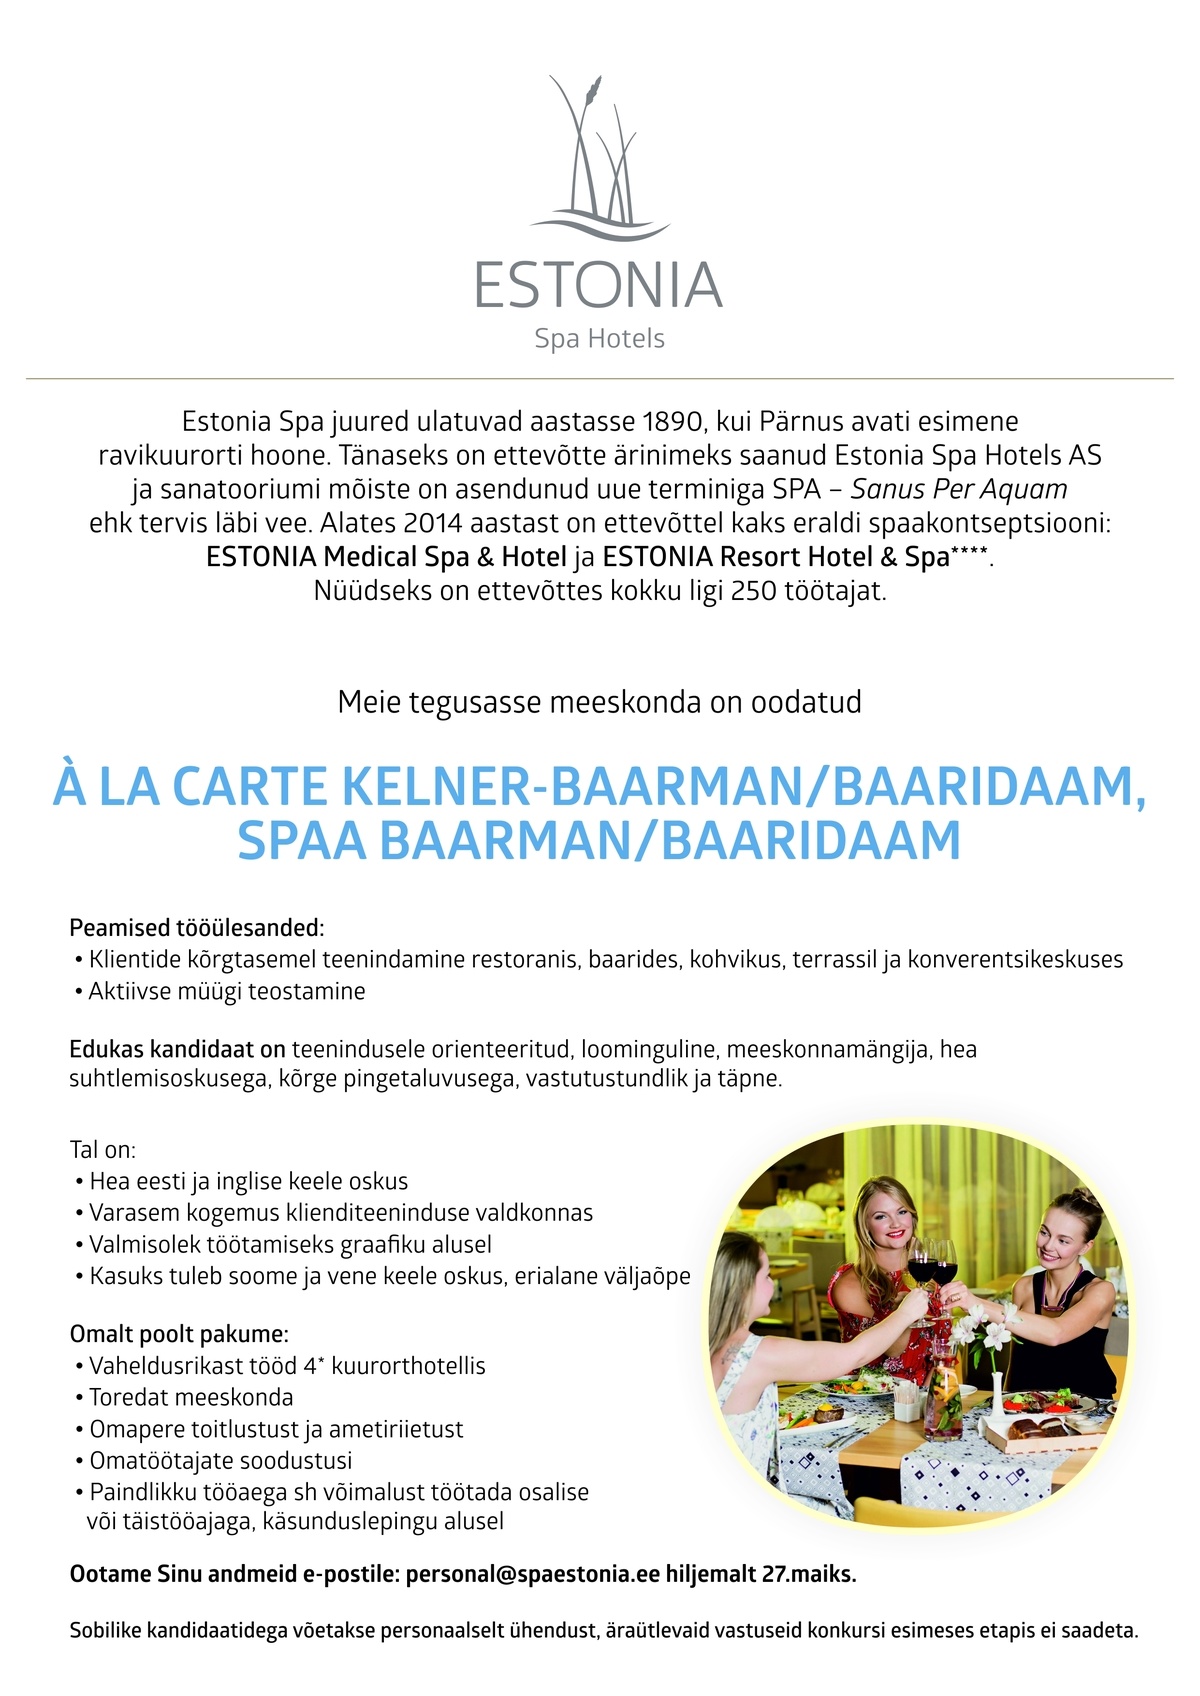 Estonia Spa Hotels AS Kelner-baarman